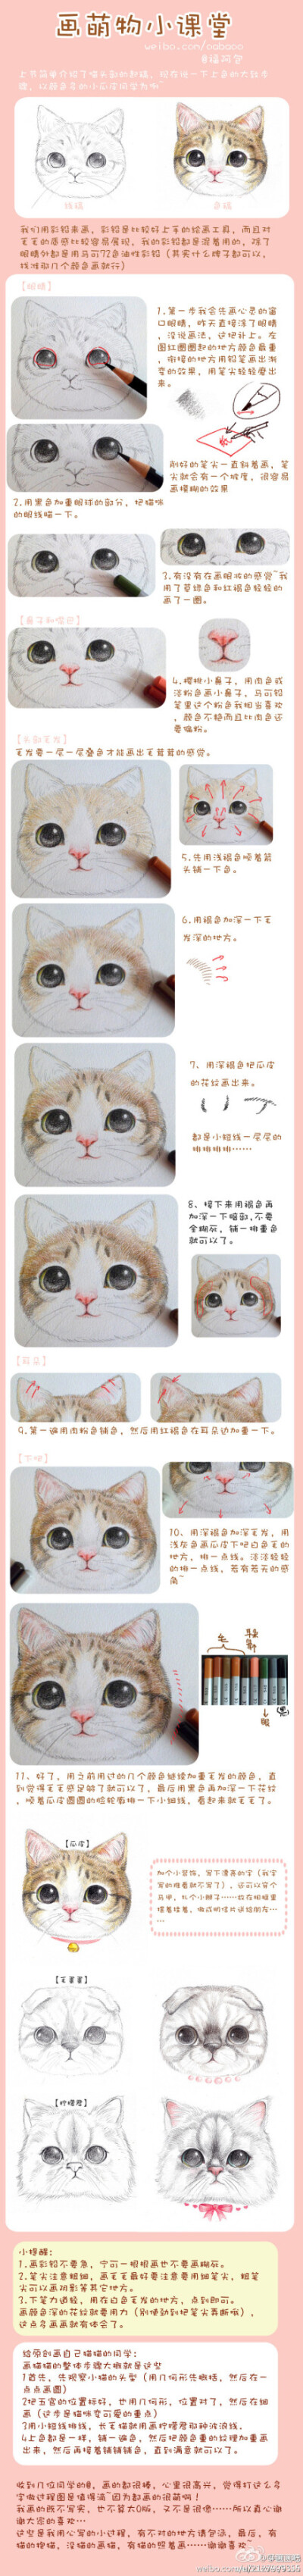 萌物小课堂——彩铅画猫步骤图～via:福阿包